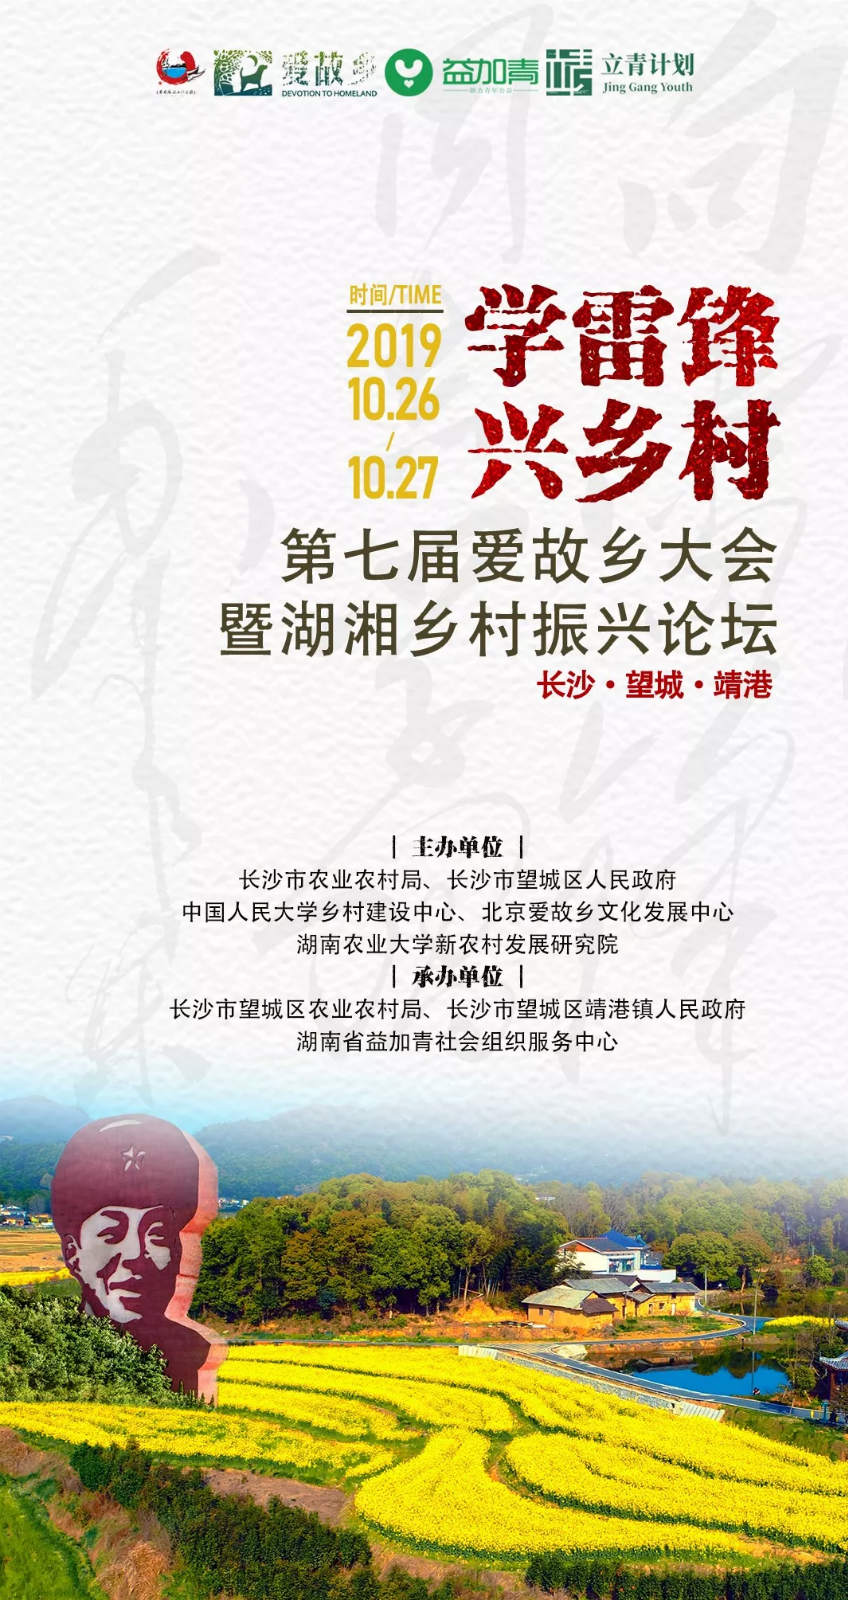 第七届爱故乡大会暨湖湘乡村振兴论坛将在长沙望城隆重举办 